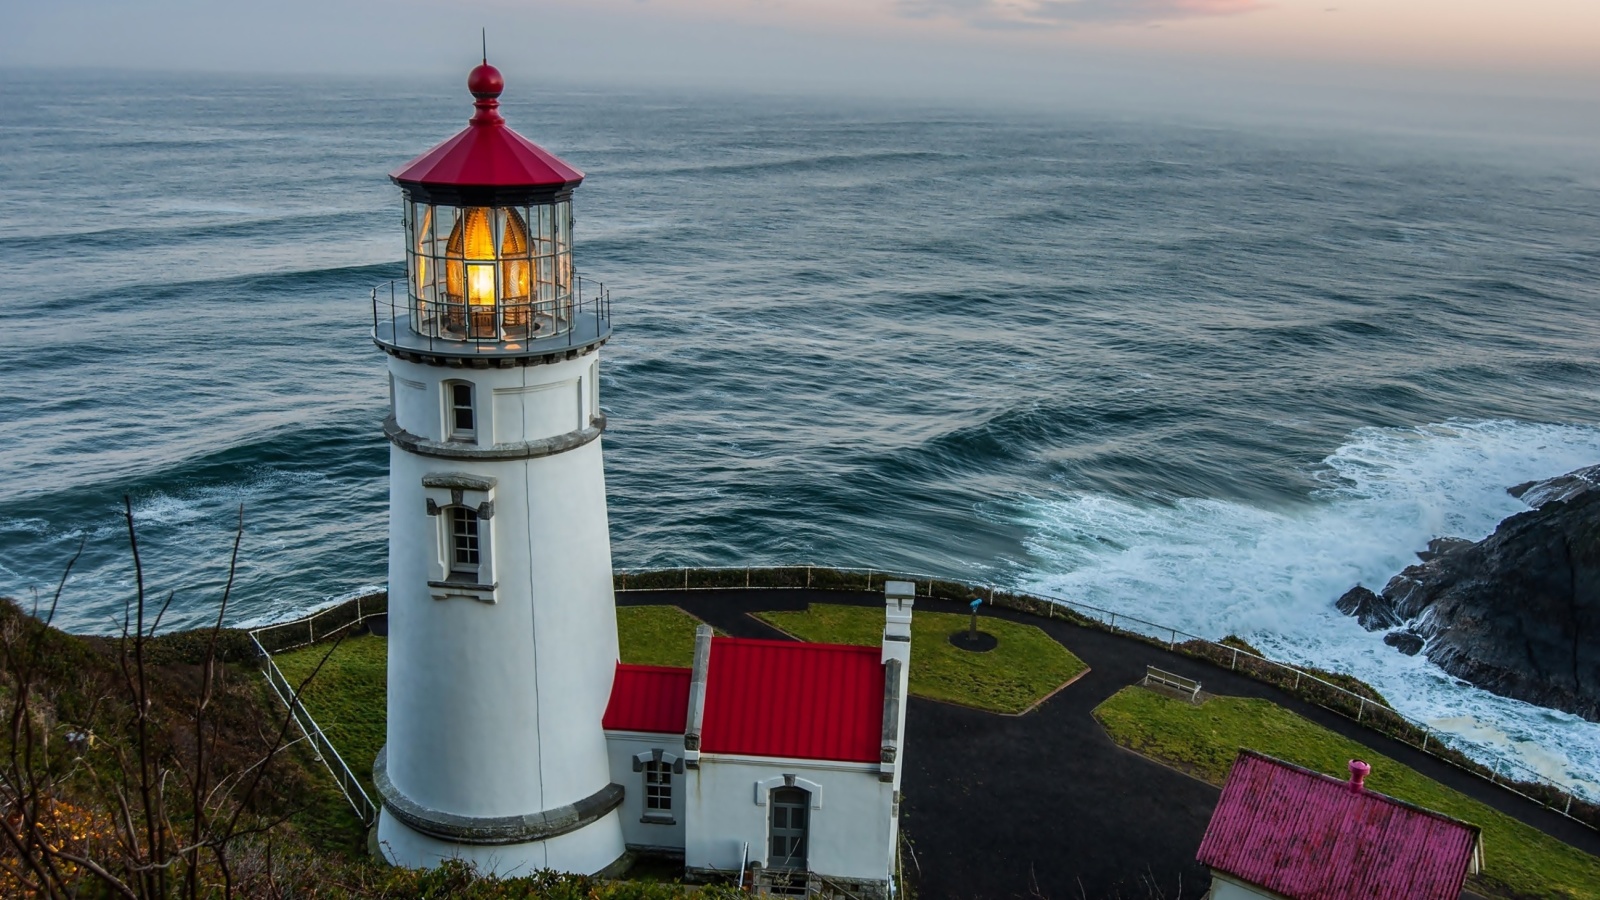 Обои Lighthouse at North Sea 1600x900